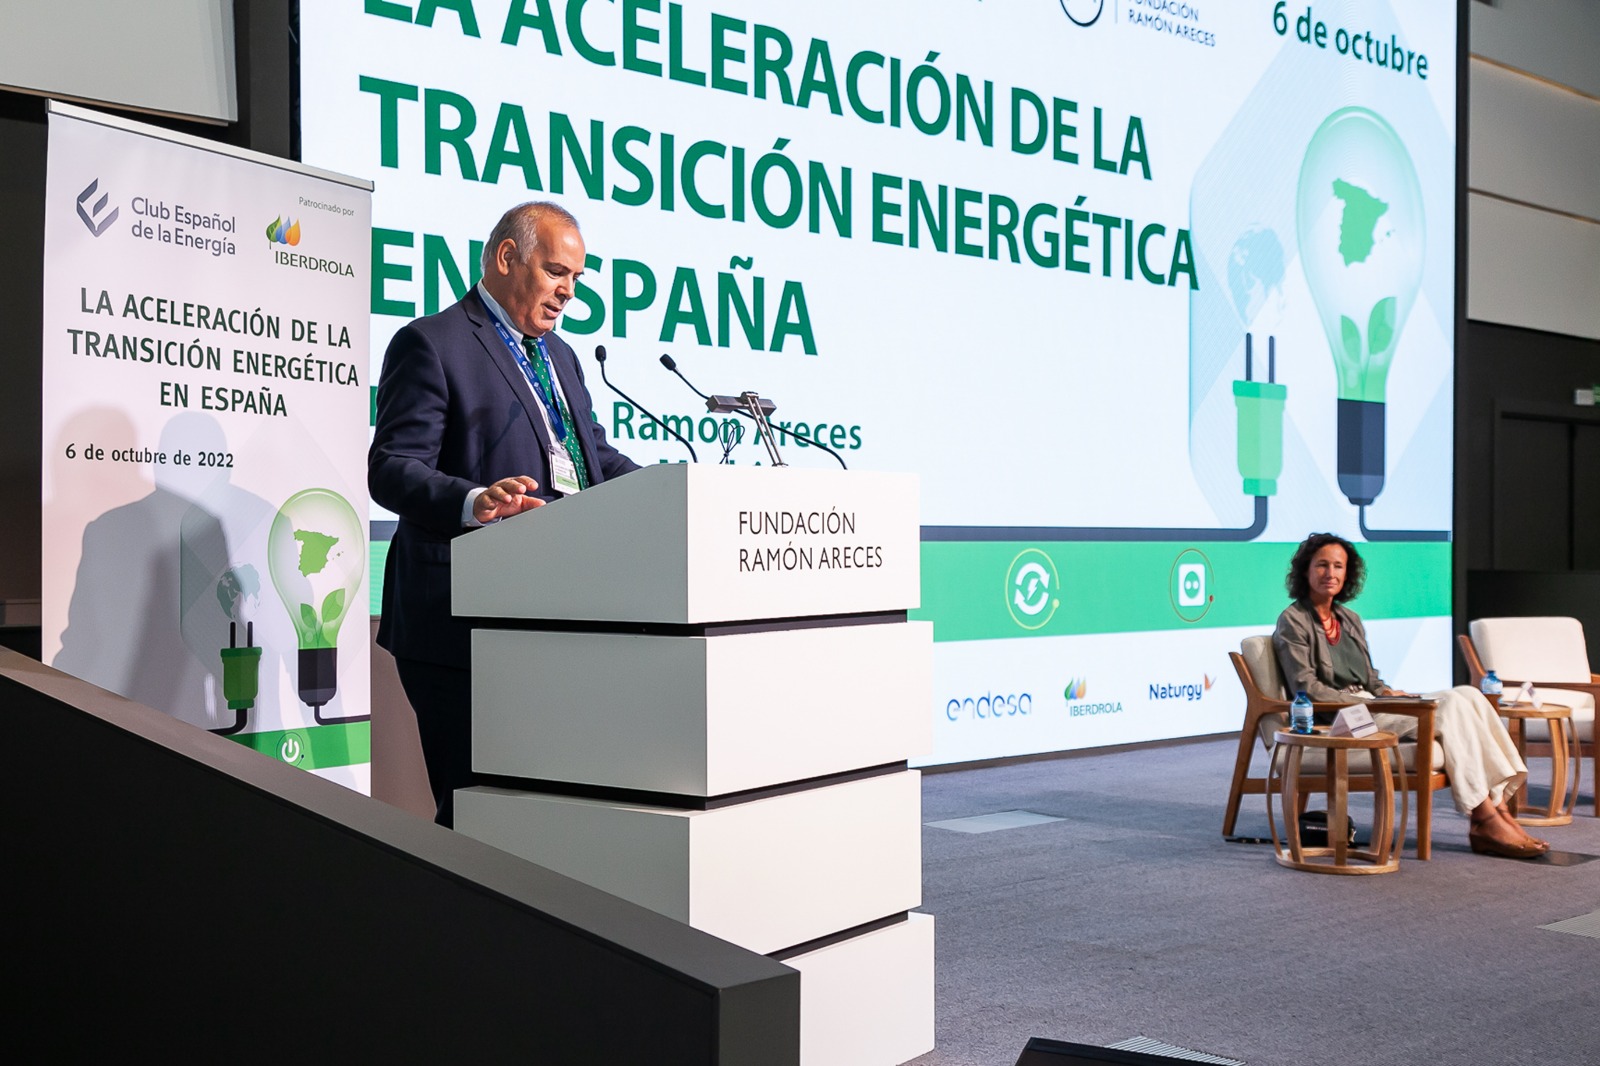 El Club Español de la Energía ofrece las claves para acelerar la transición energética